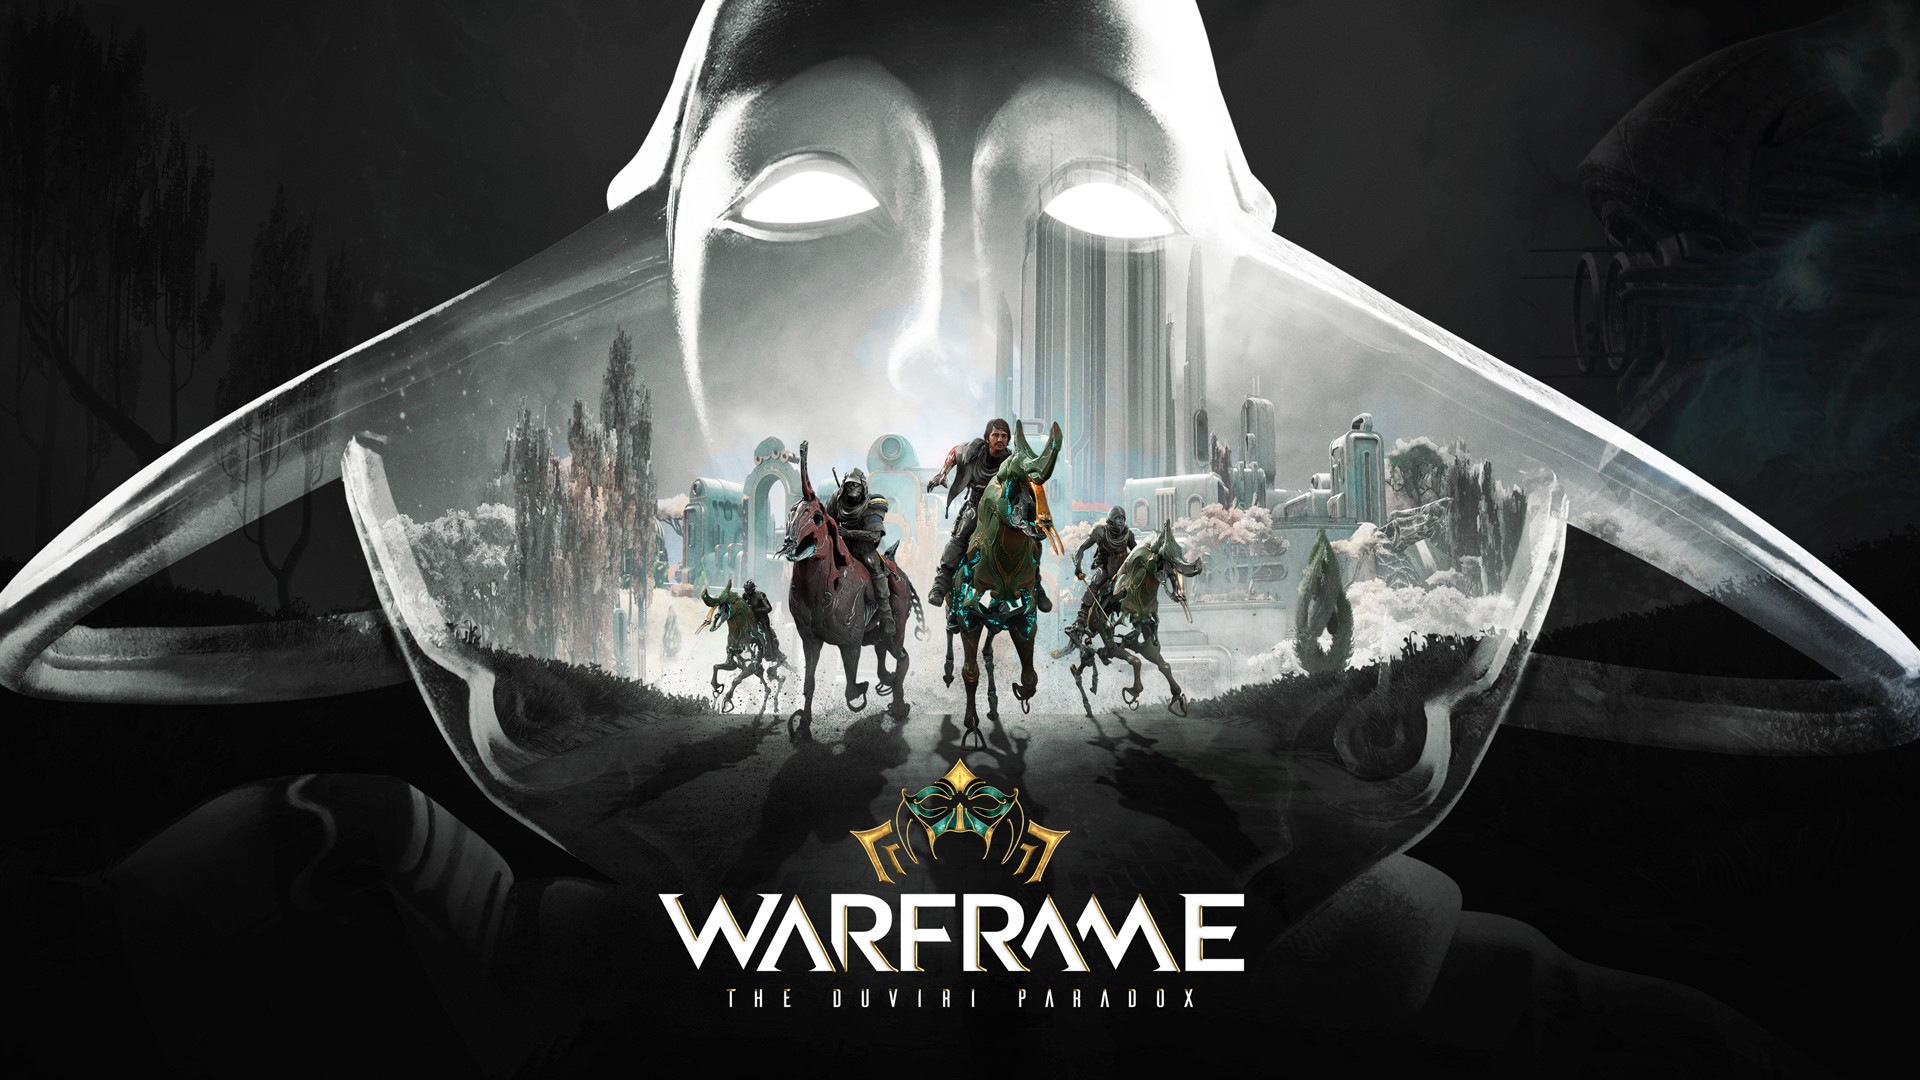 Ingrese a The Duviri Paradox hoy en Xbox con la expansión gratuita más nueva de Warframe